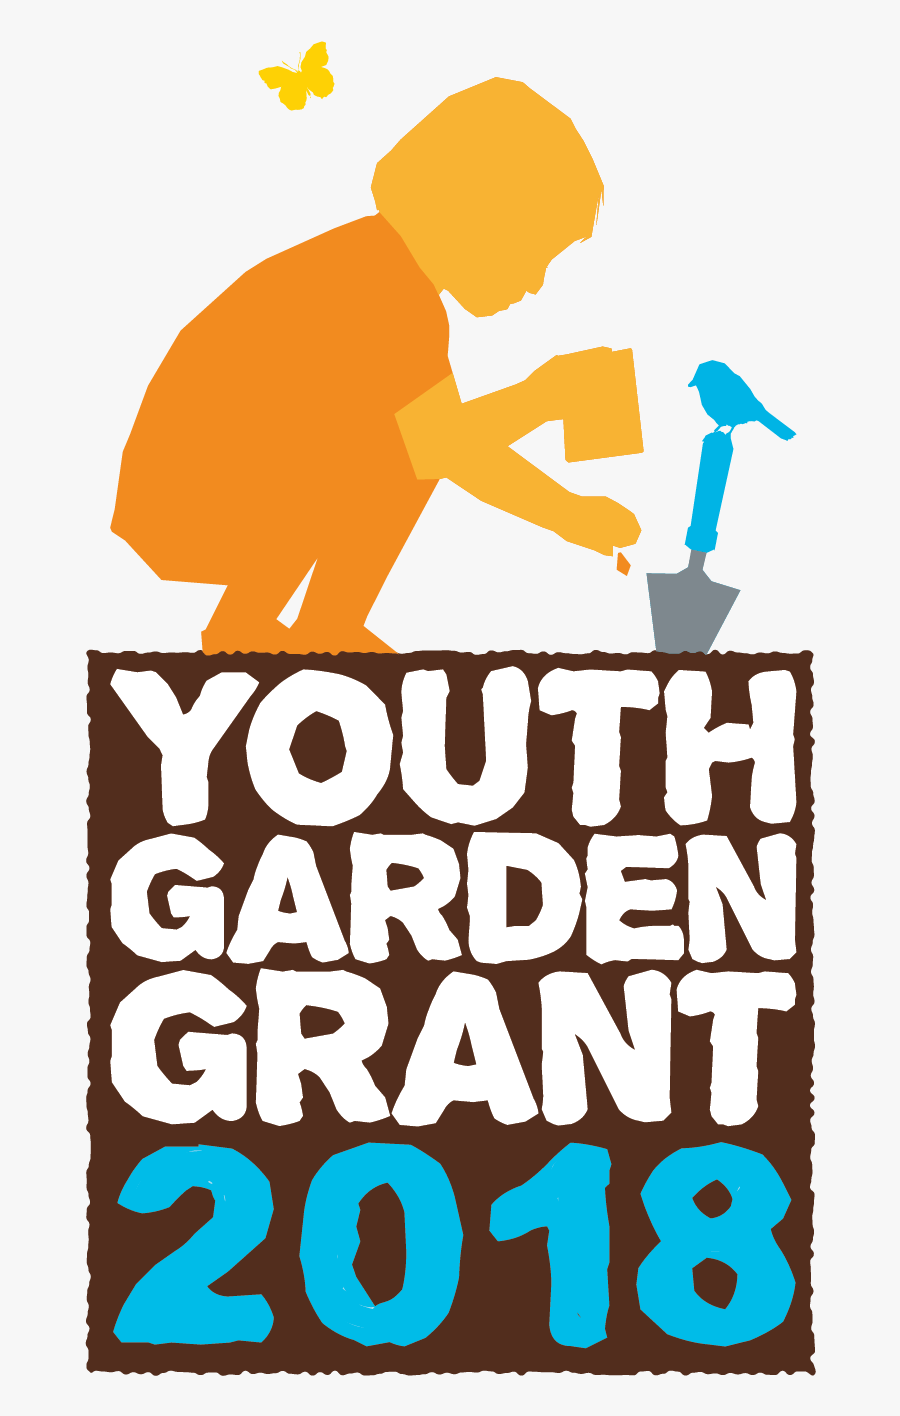 Garden Grants - School Garden Grant, Transparent Clipart